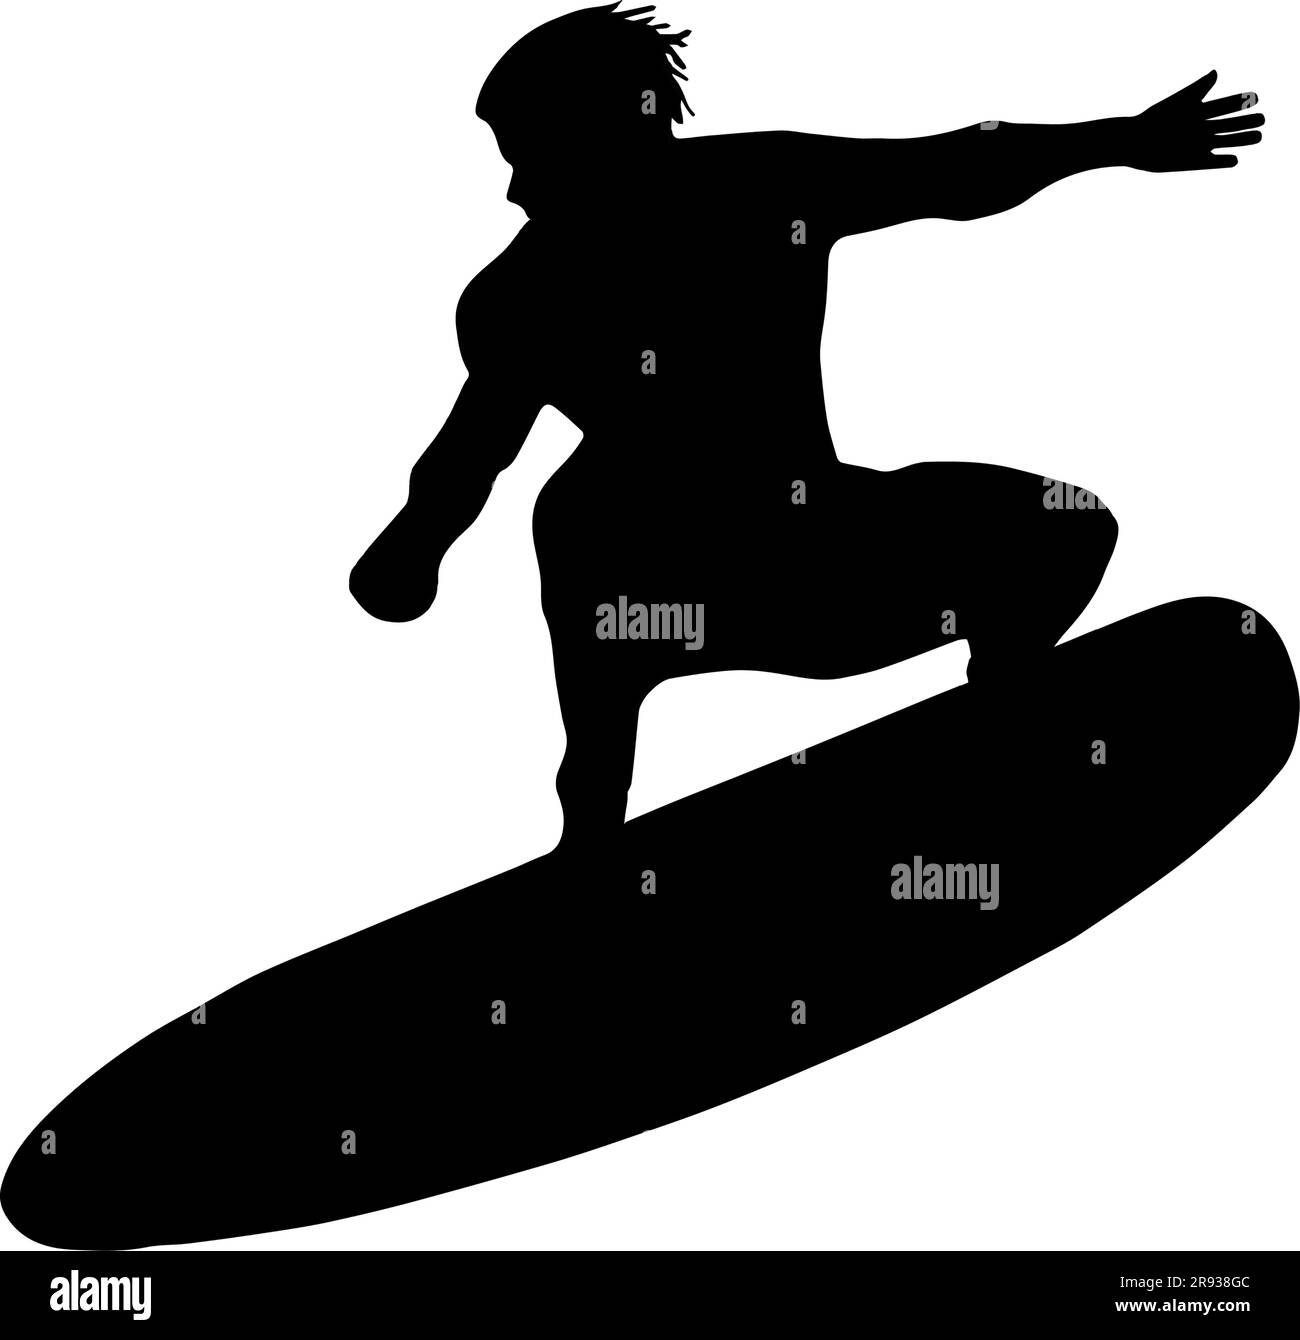 Silhouette eines Surfers. Schwarze Konturen vor transparentem Hintergrund. Stock Vektor